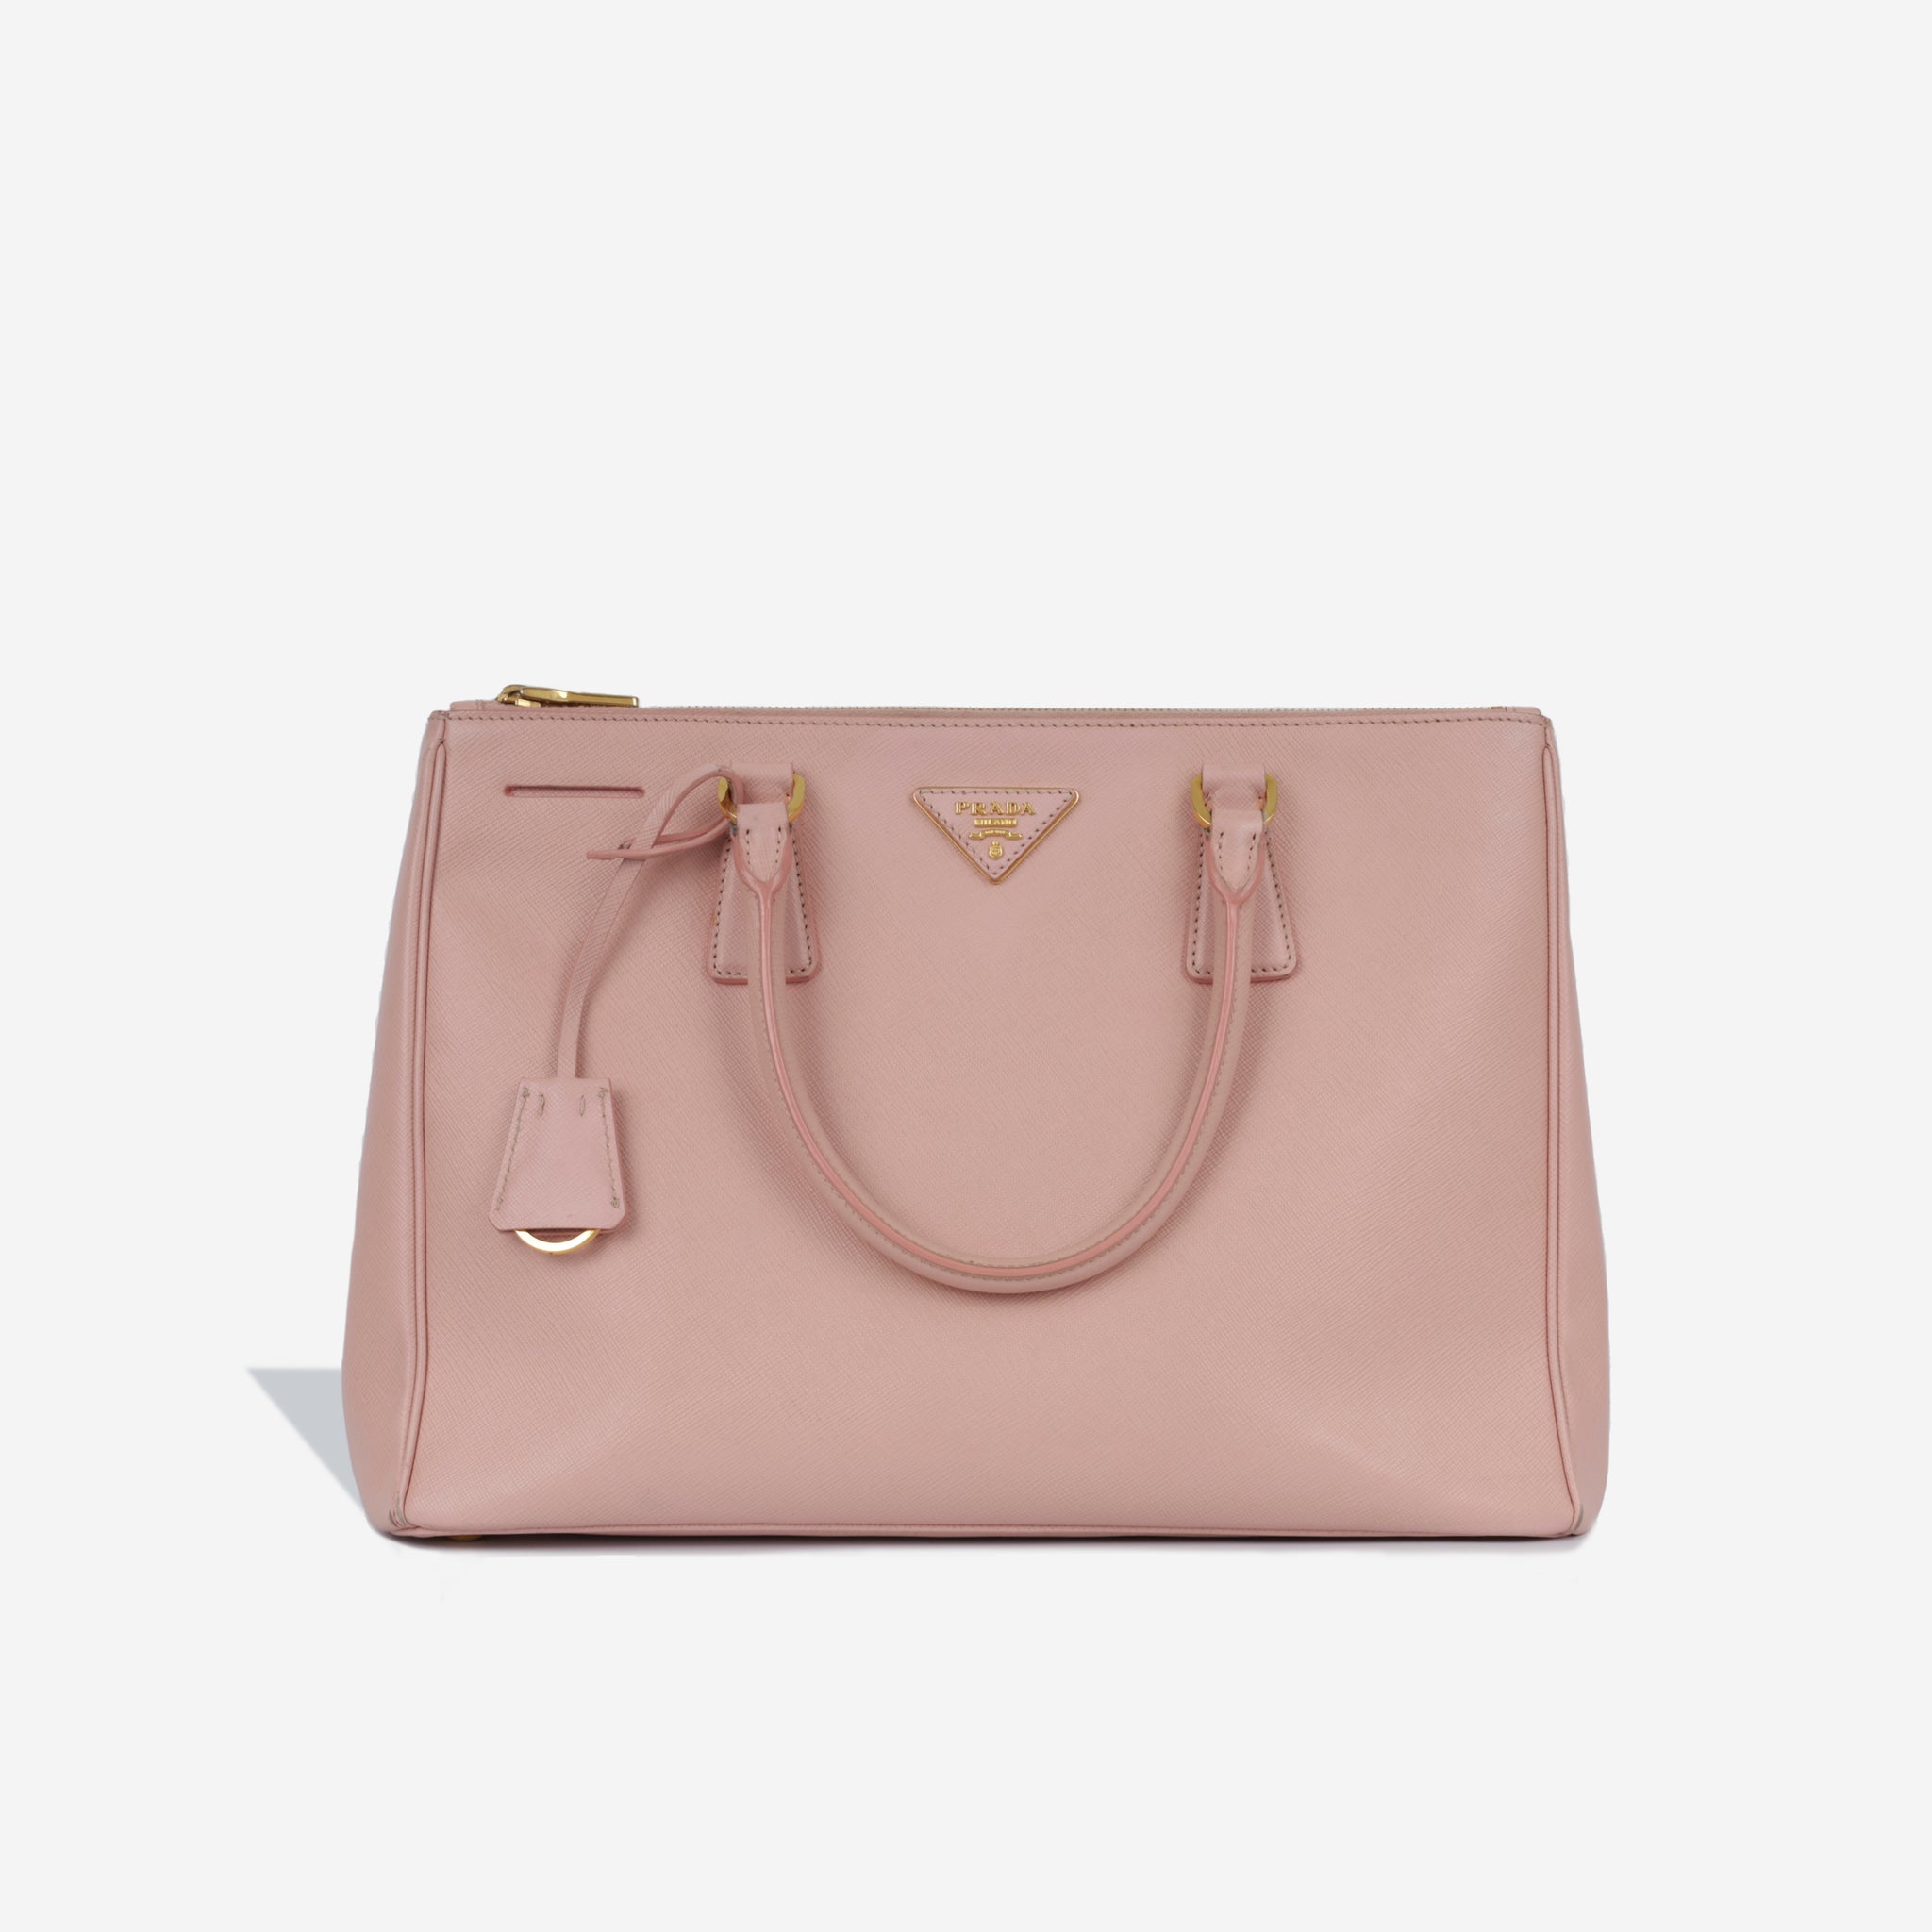 PRADA Mini Galleria Review + What's In My Bag 